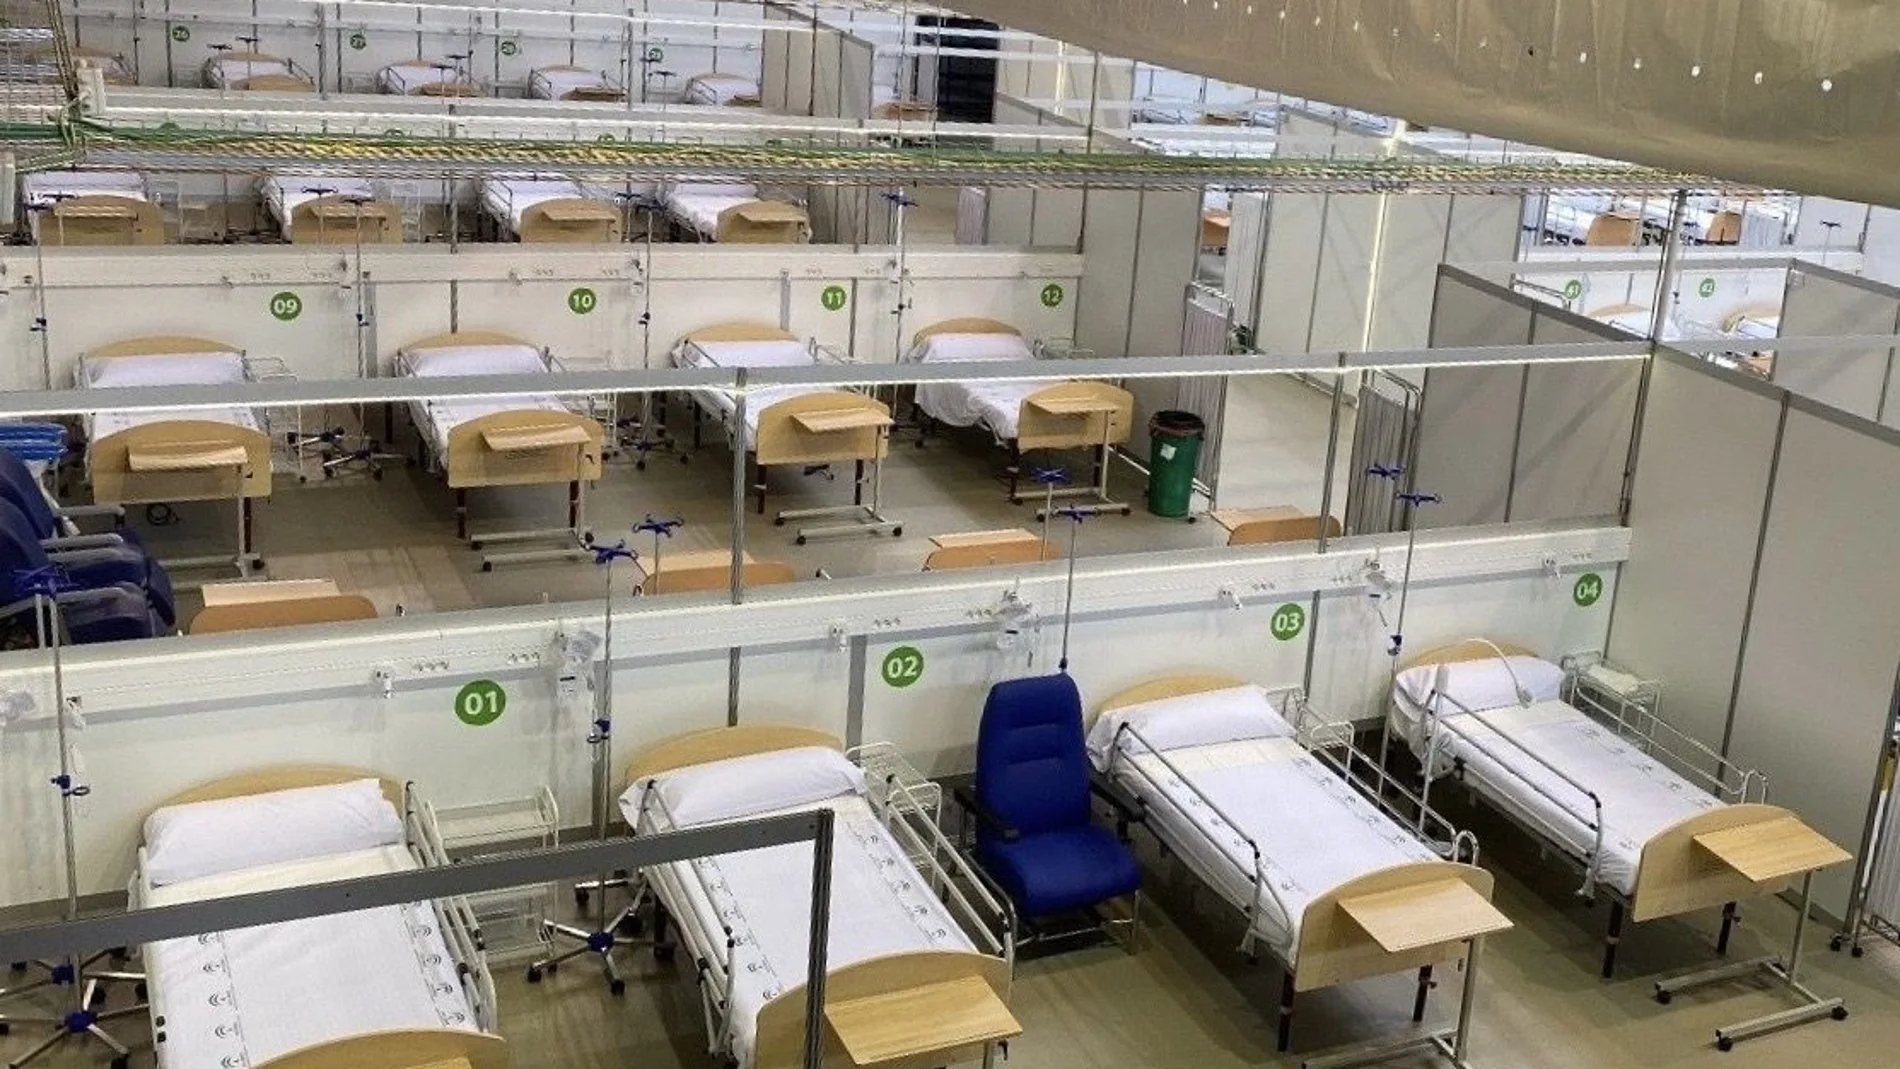 Son días de hospitales de campaña, como el instalado en el pabellón deportivo de Carranque, en Málaga, que se muestra en la imagen